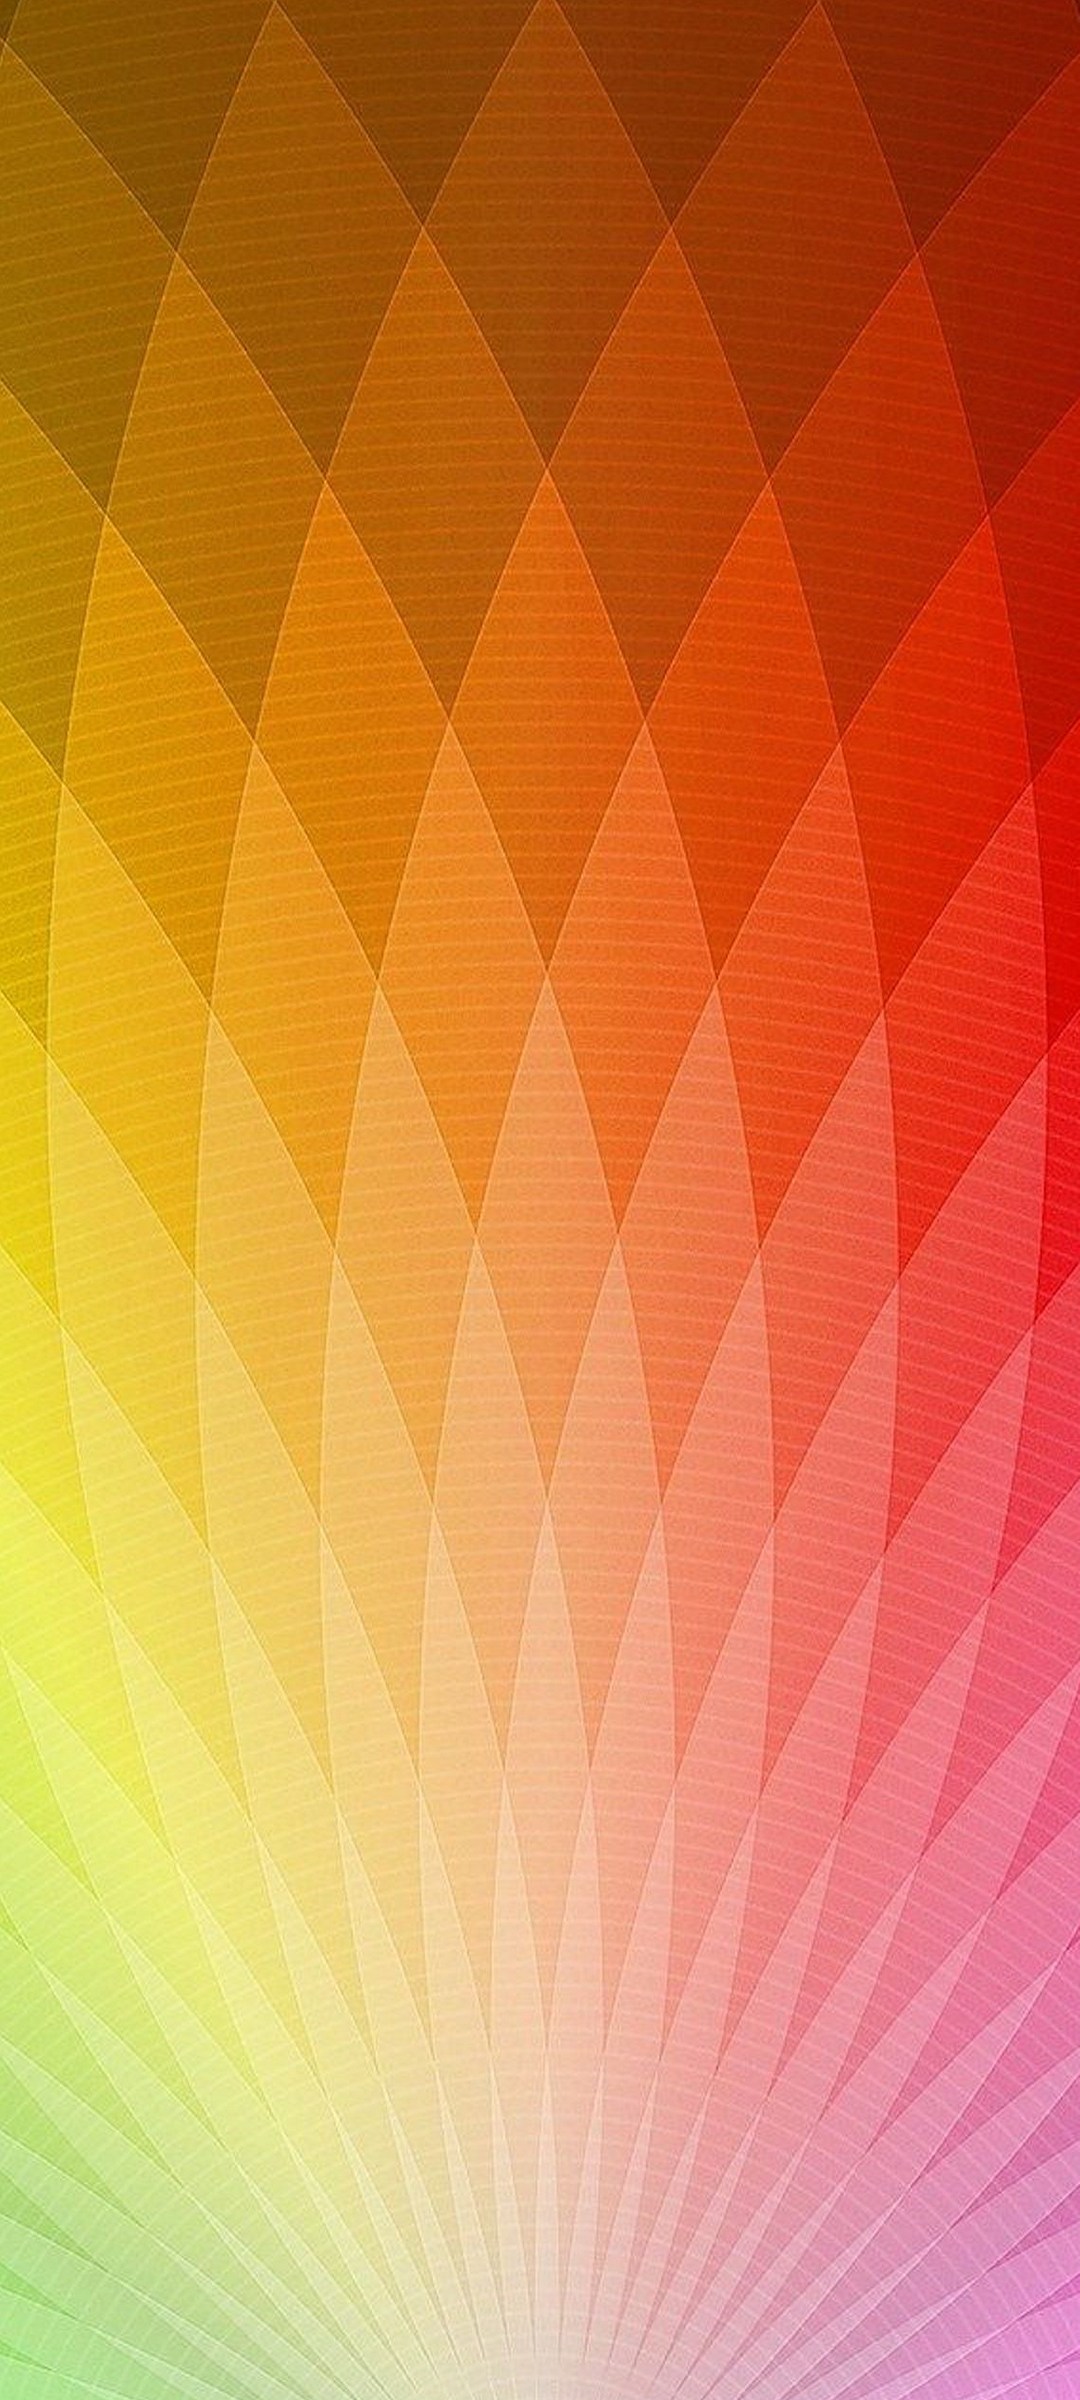 赤 緑 黄色 オレンジの放射状のグラデーション Galaxy S21 5g Androidスマホ壁紙 待ち受け スマラン